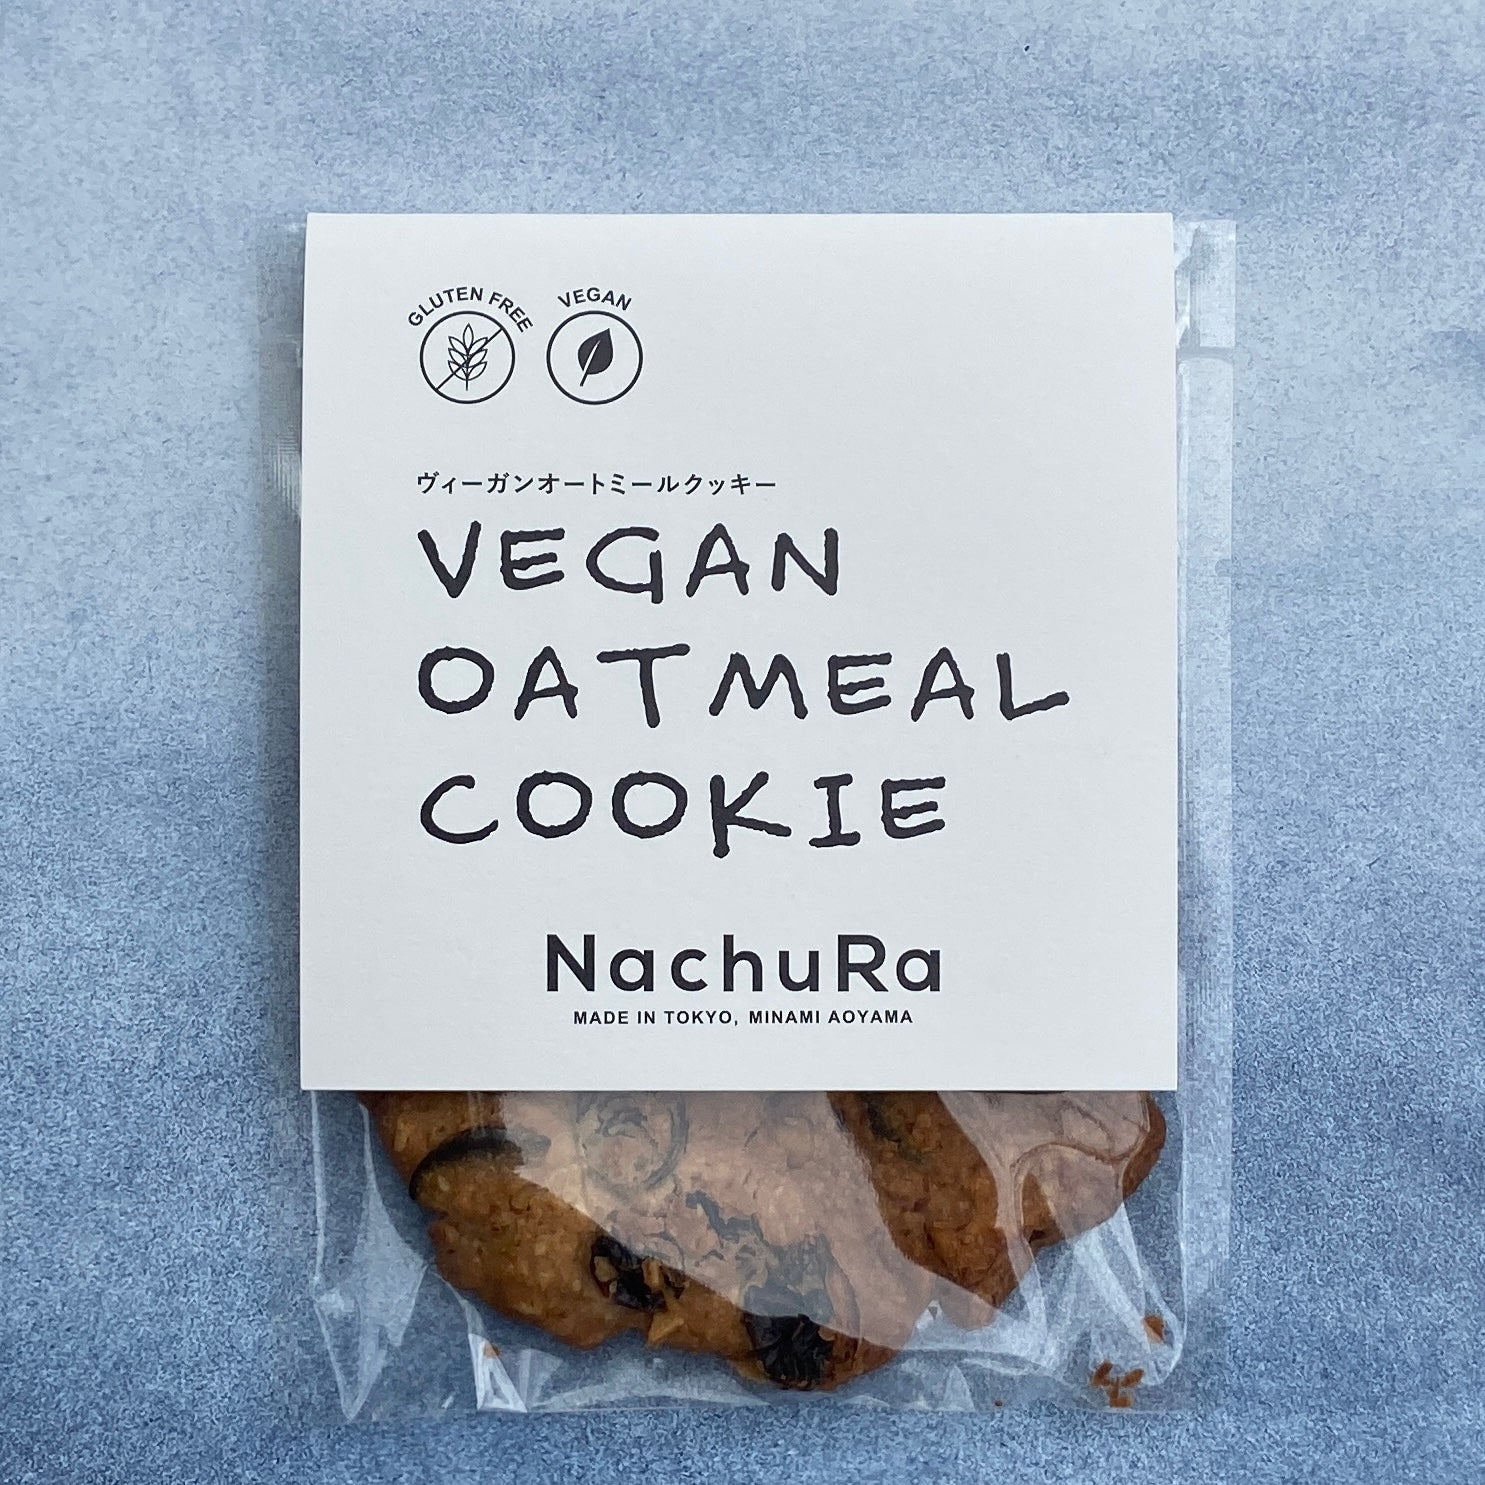 Healthy vegan oatmeal cookies